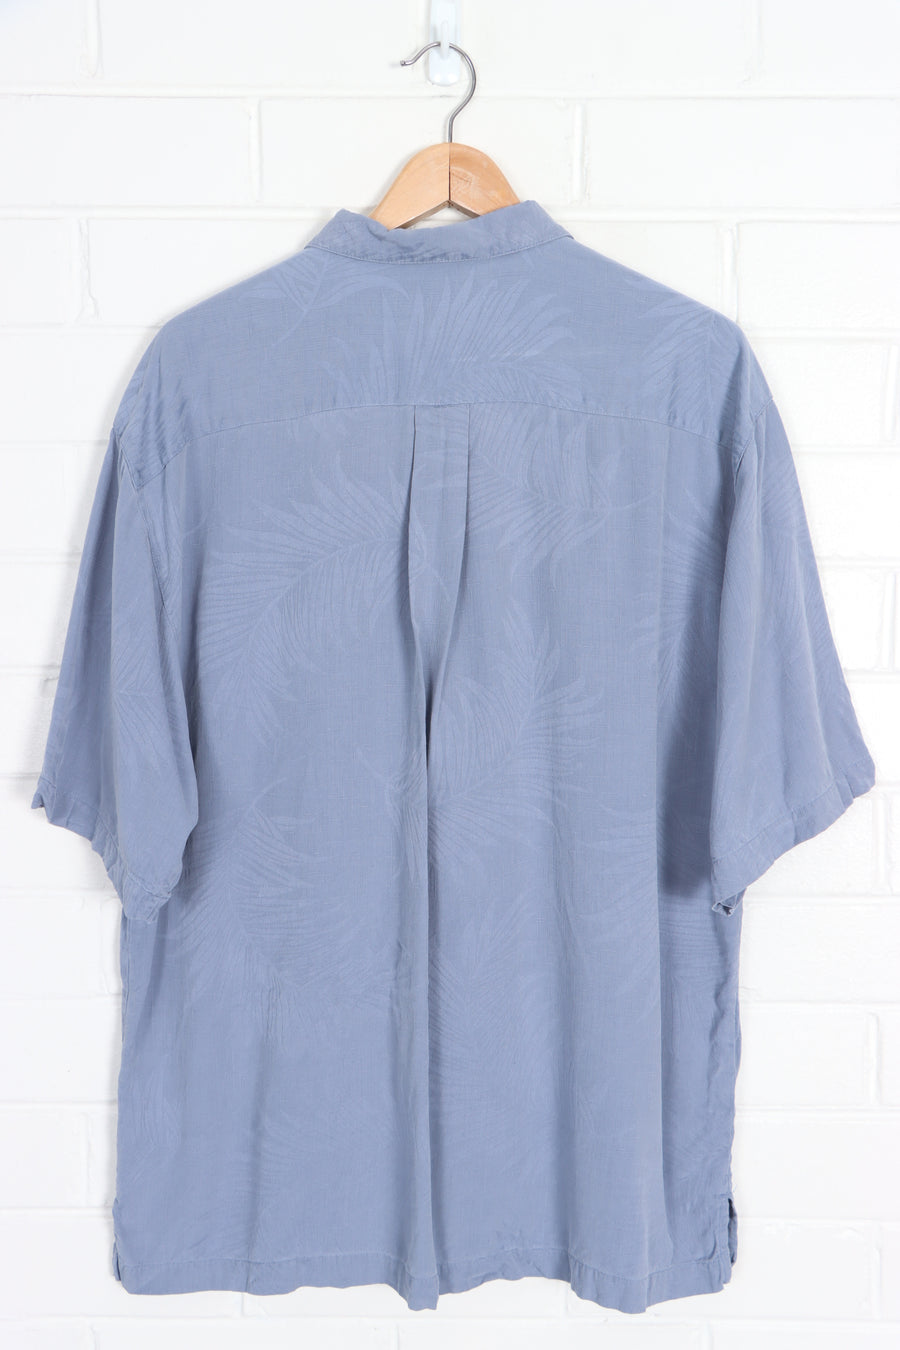 JAMAICA JAXX Powder Blue Silk Hawaiian Shirt (L)